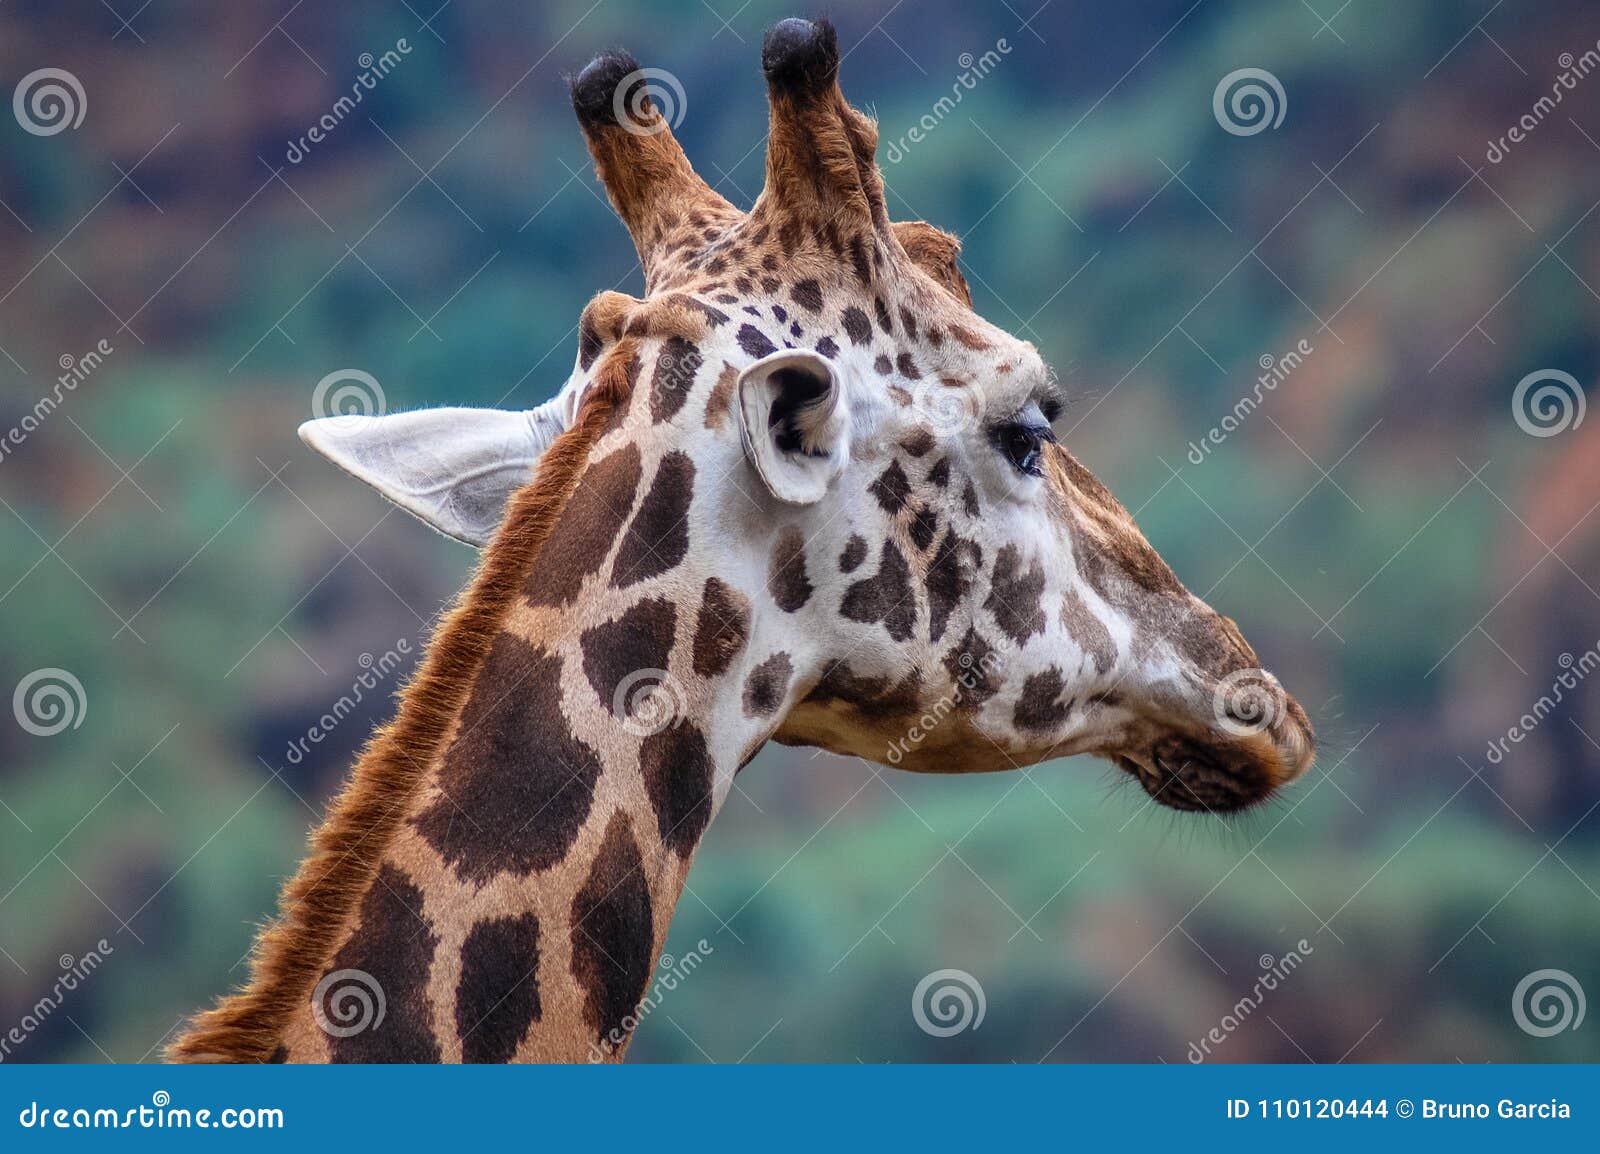 giraffe in cantabria natural reserve